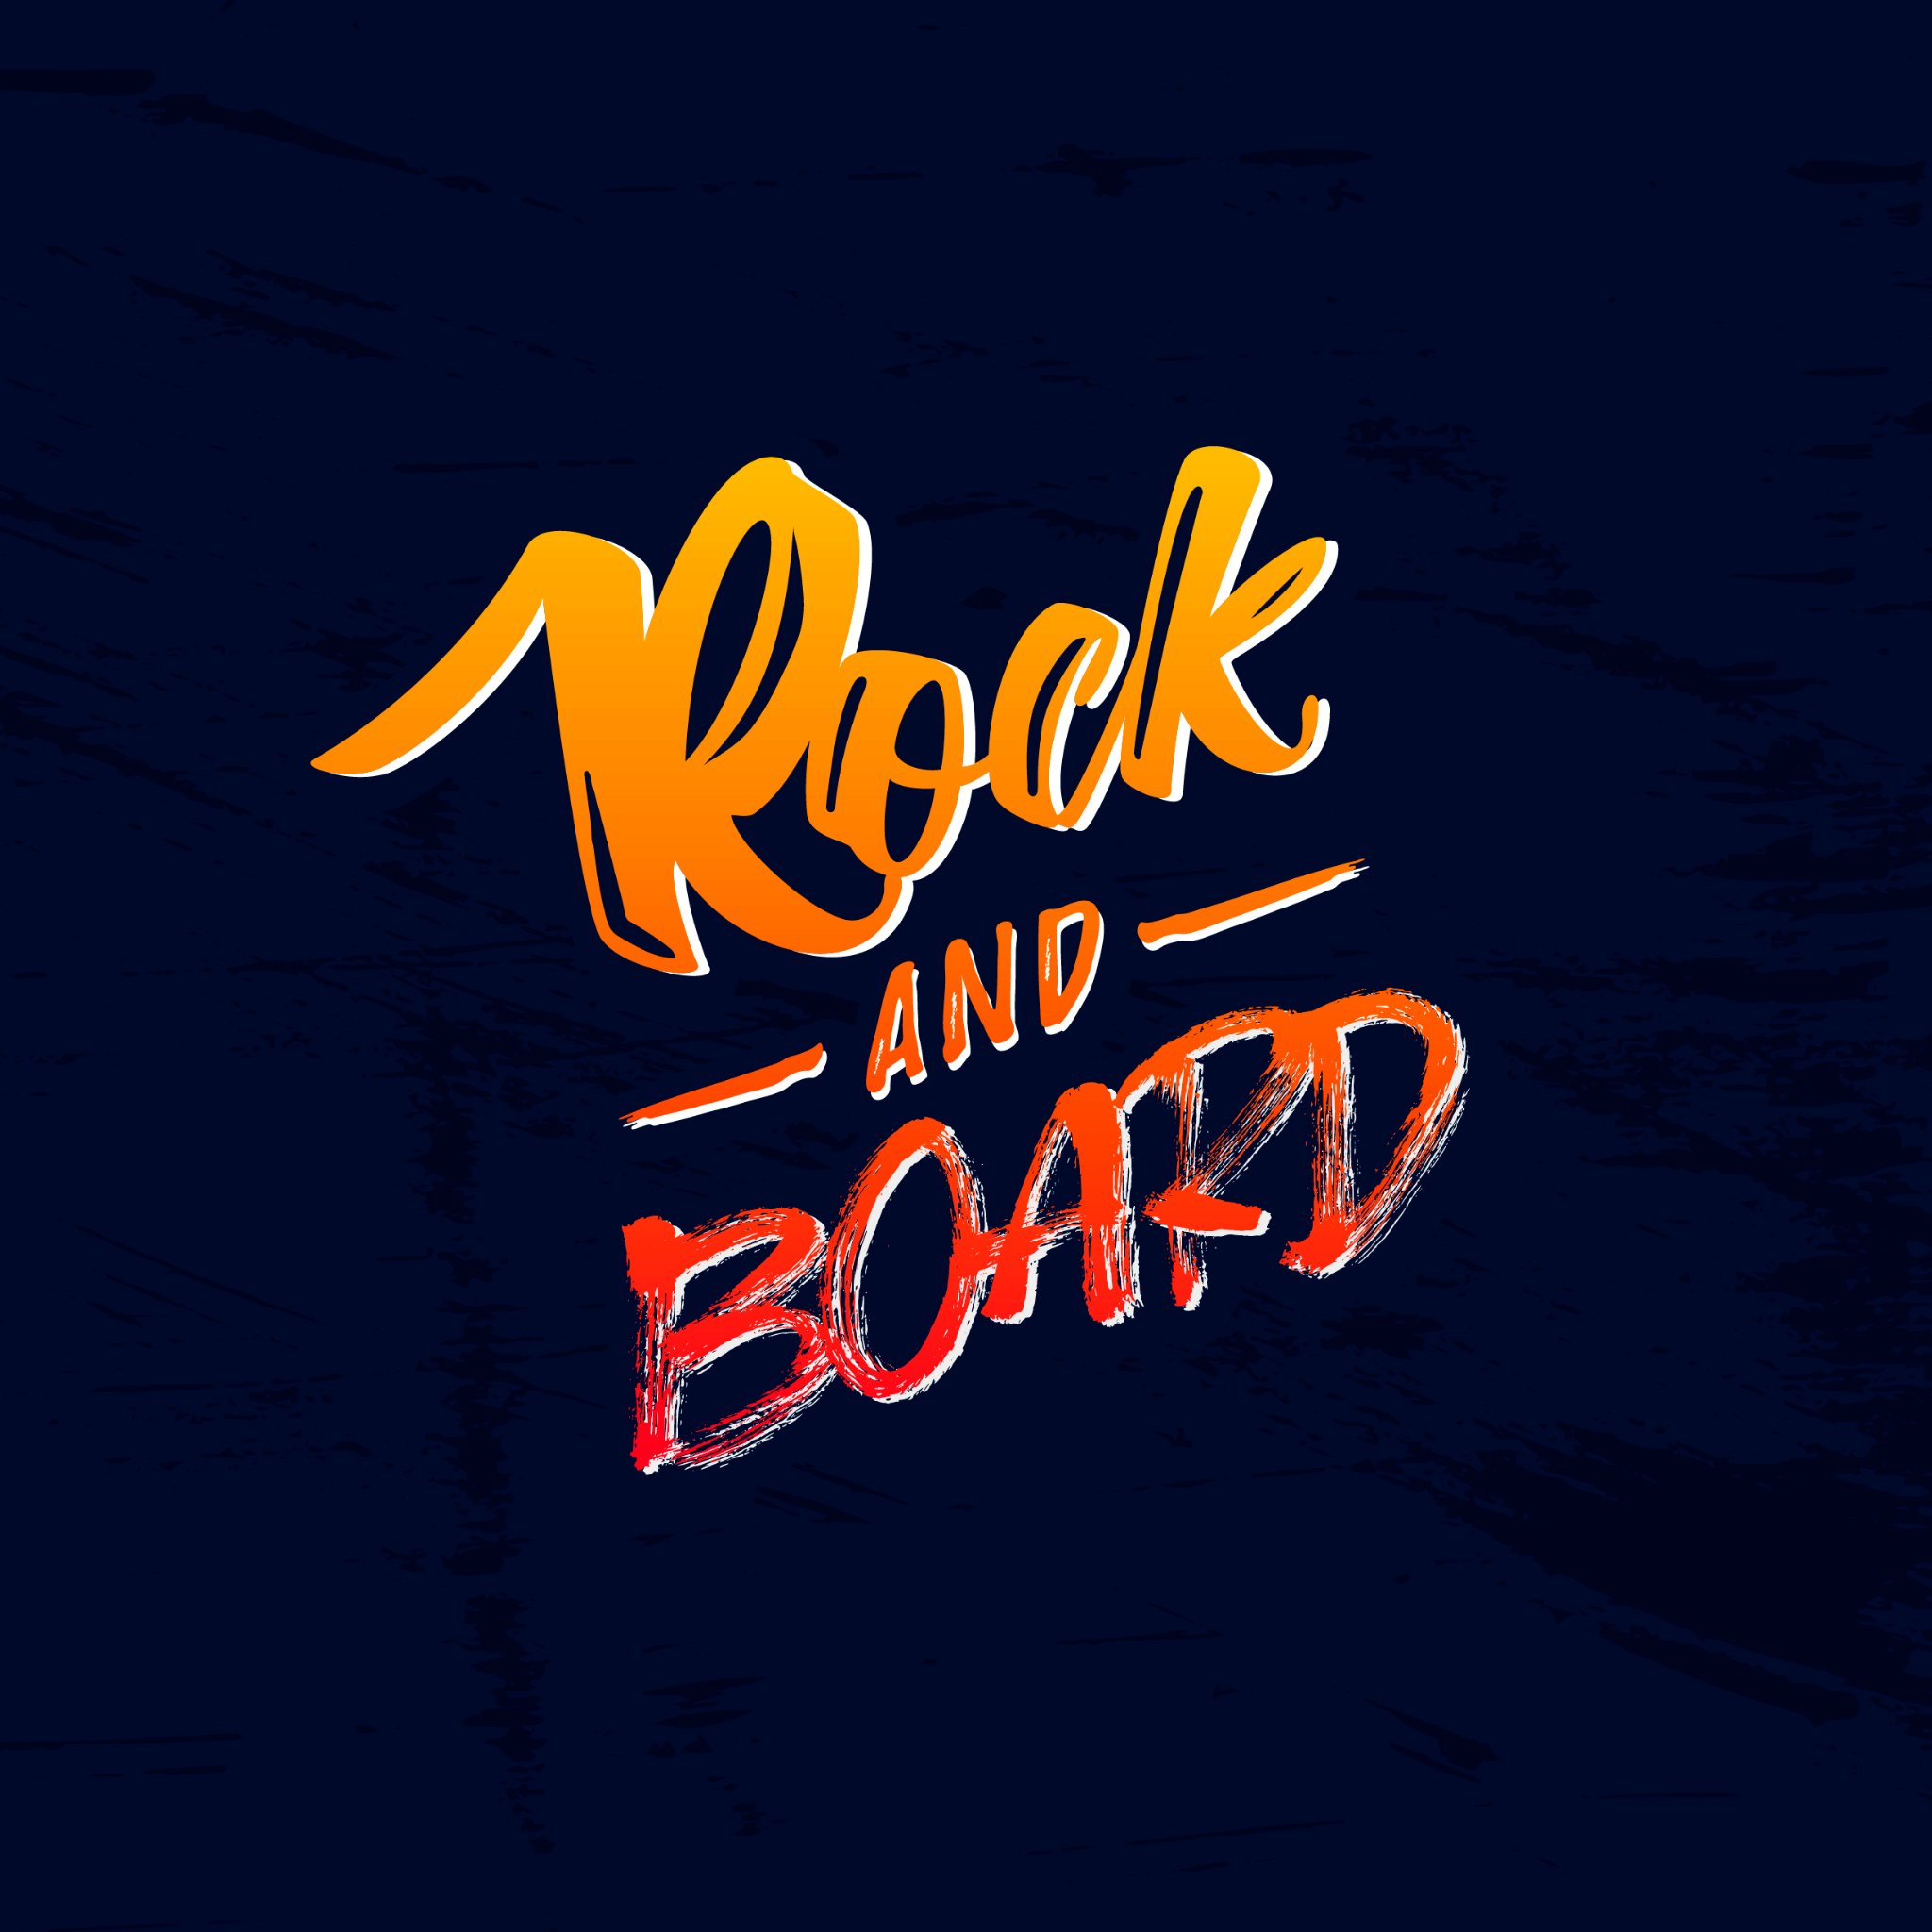 Rockandboard